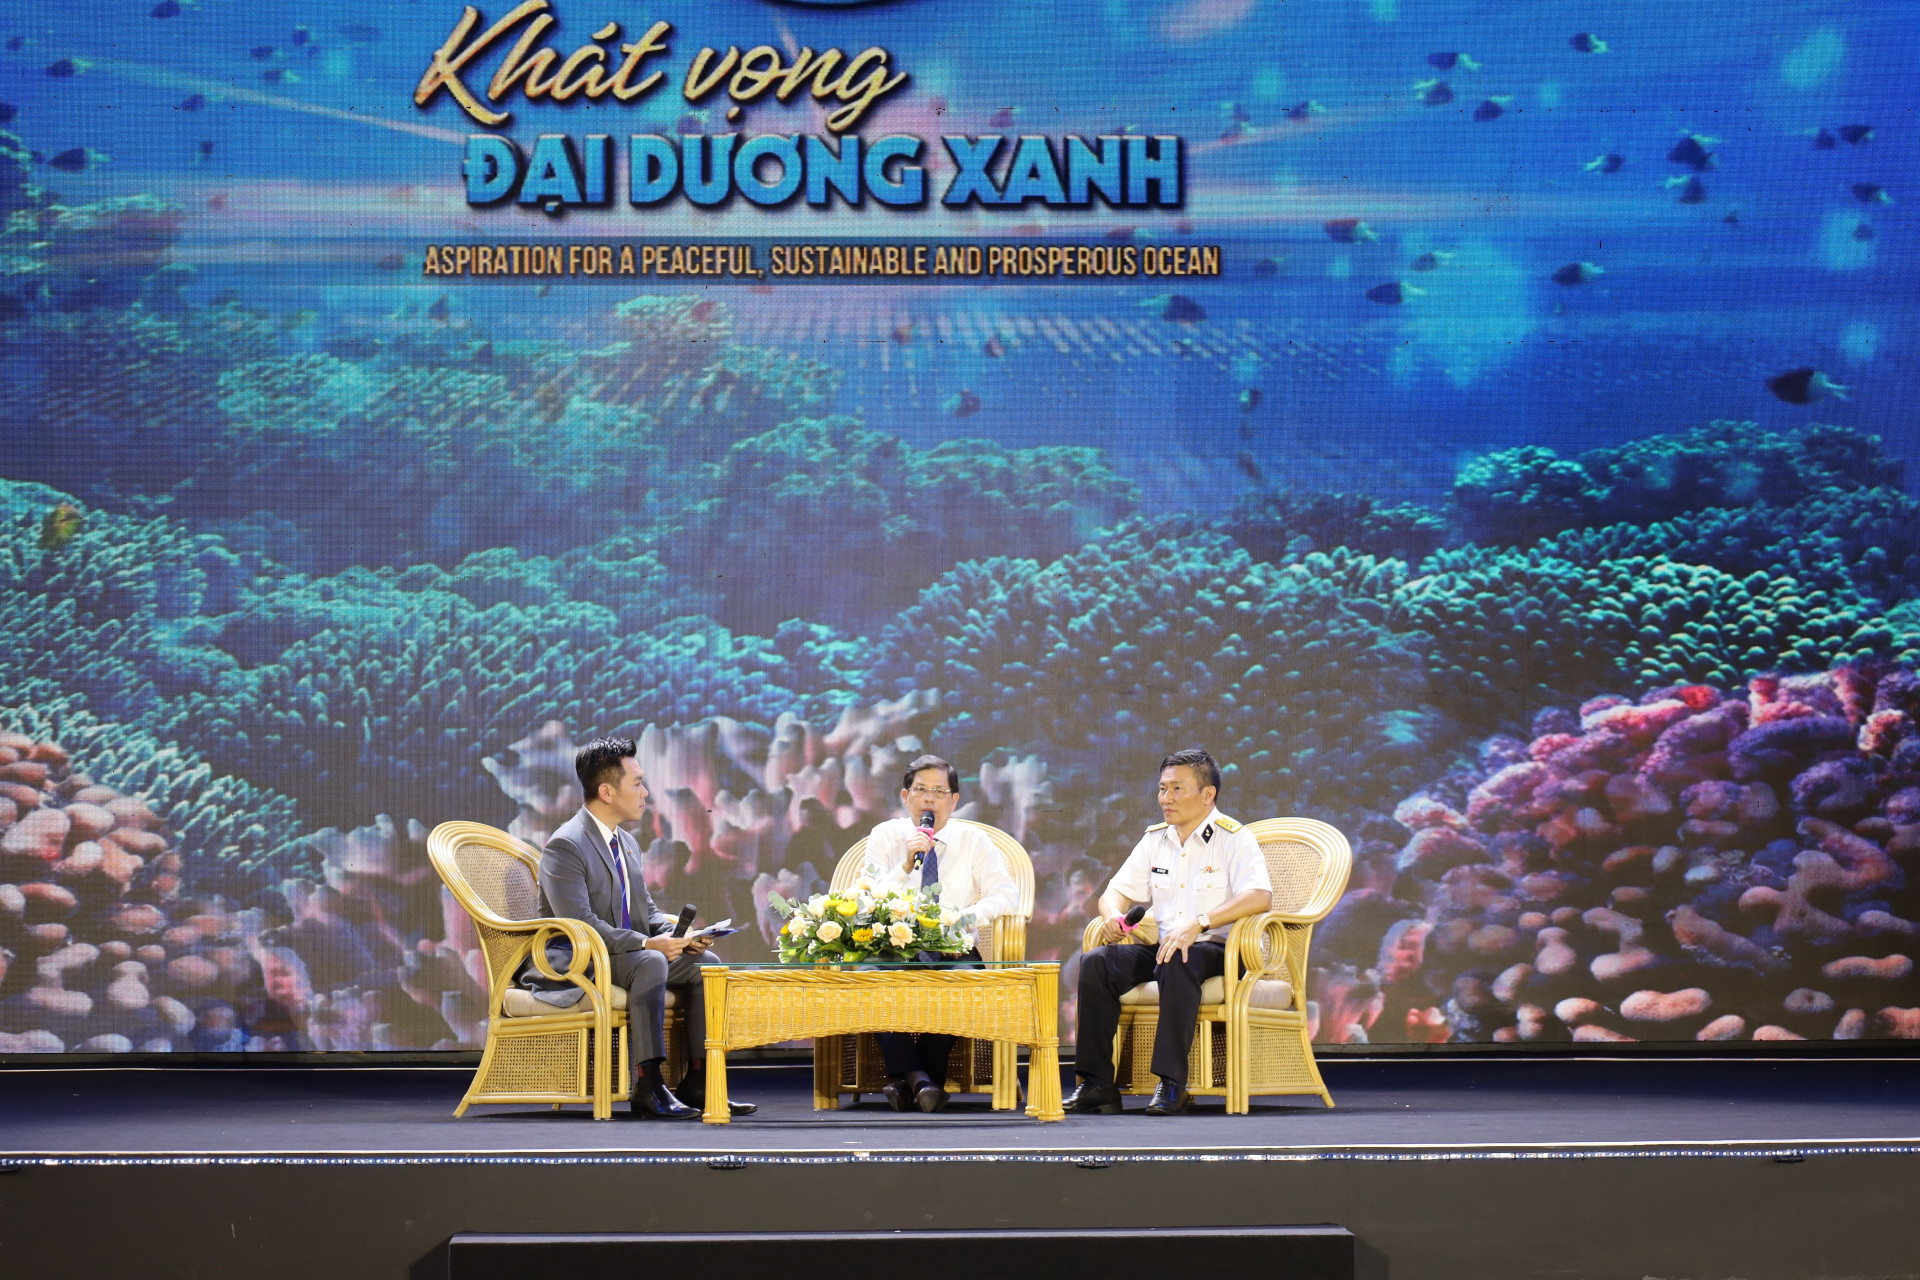 Ông Nguyễn Tấn Tuân - Chủ tịch UBND tỉnh Khánh Hòa tham gia giao lưu tại điểm cầu Khánh Hòa.